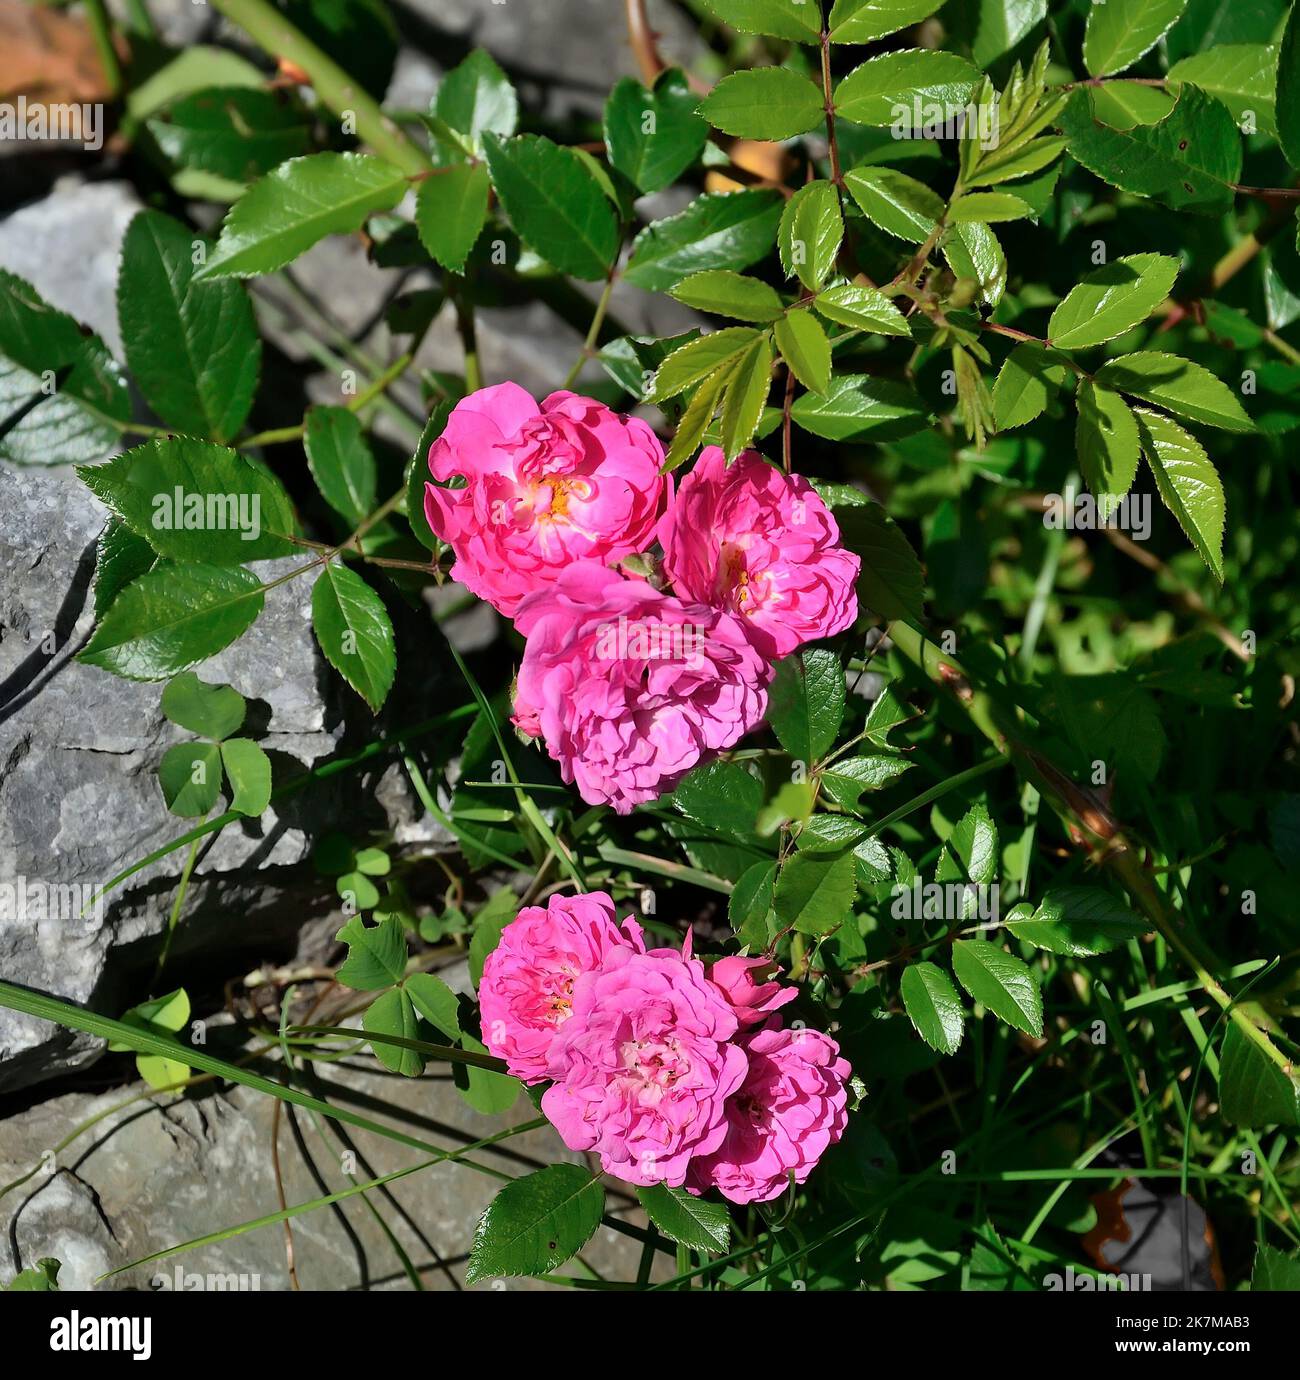 Belles petites fleurs roses de rosier couvert de terre dans le jardin entre les pierres. Roses roses parfumées avec des feuilles en glissement alpin. Design paysage con Banque D'Images